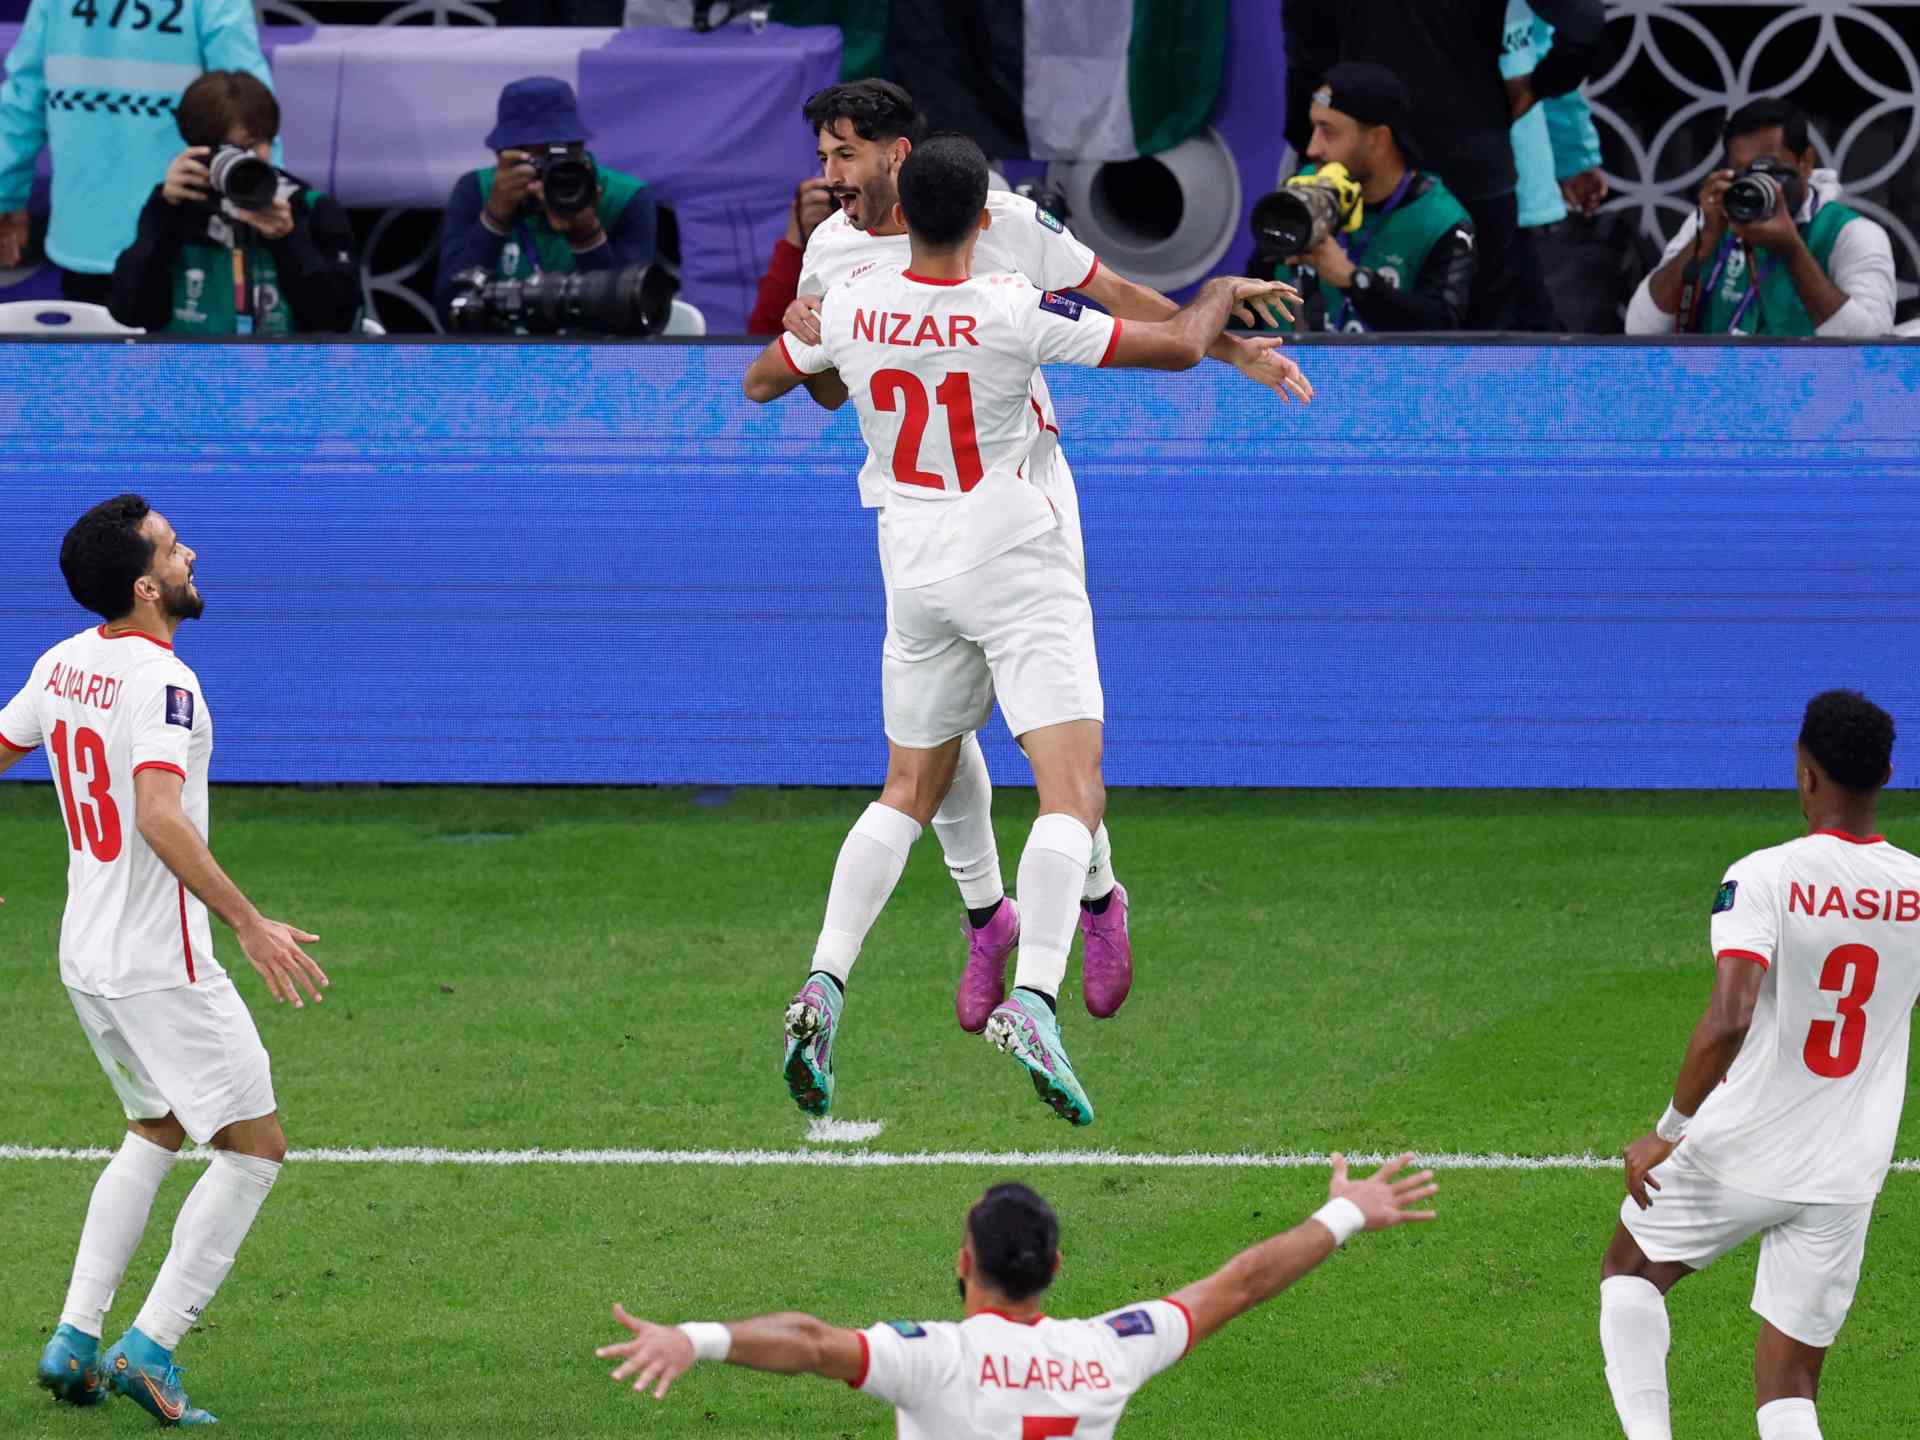 هل تستثمر الكرة الأردنية نجاح “النشامى” في كأس آسيا؟ | رياضة – البوكس نيوز